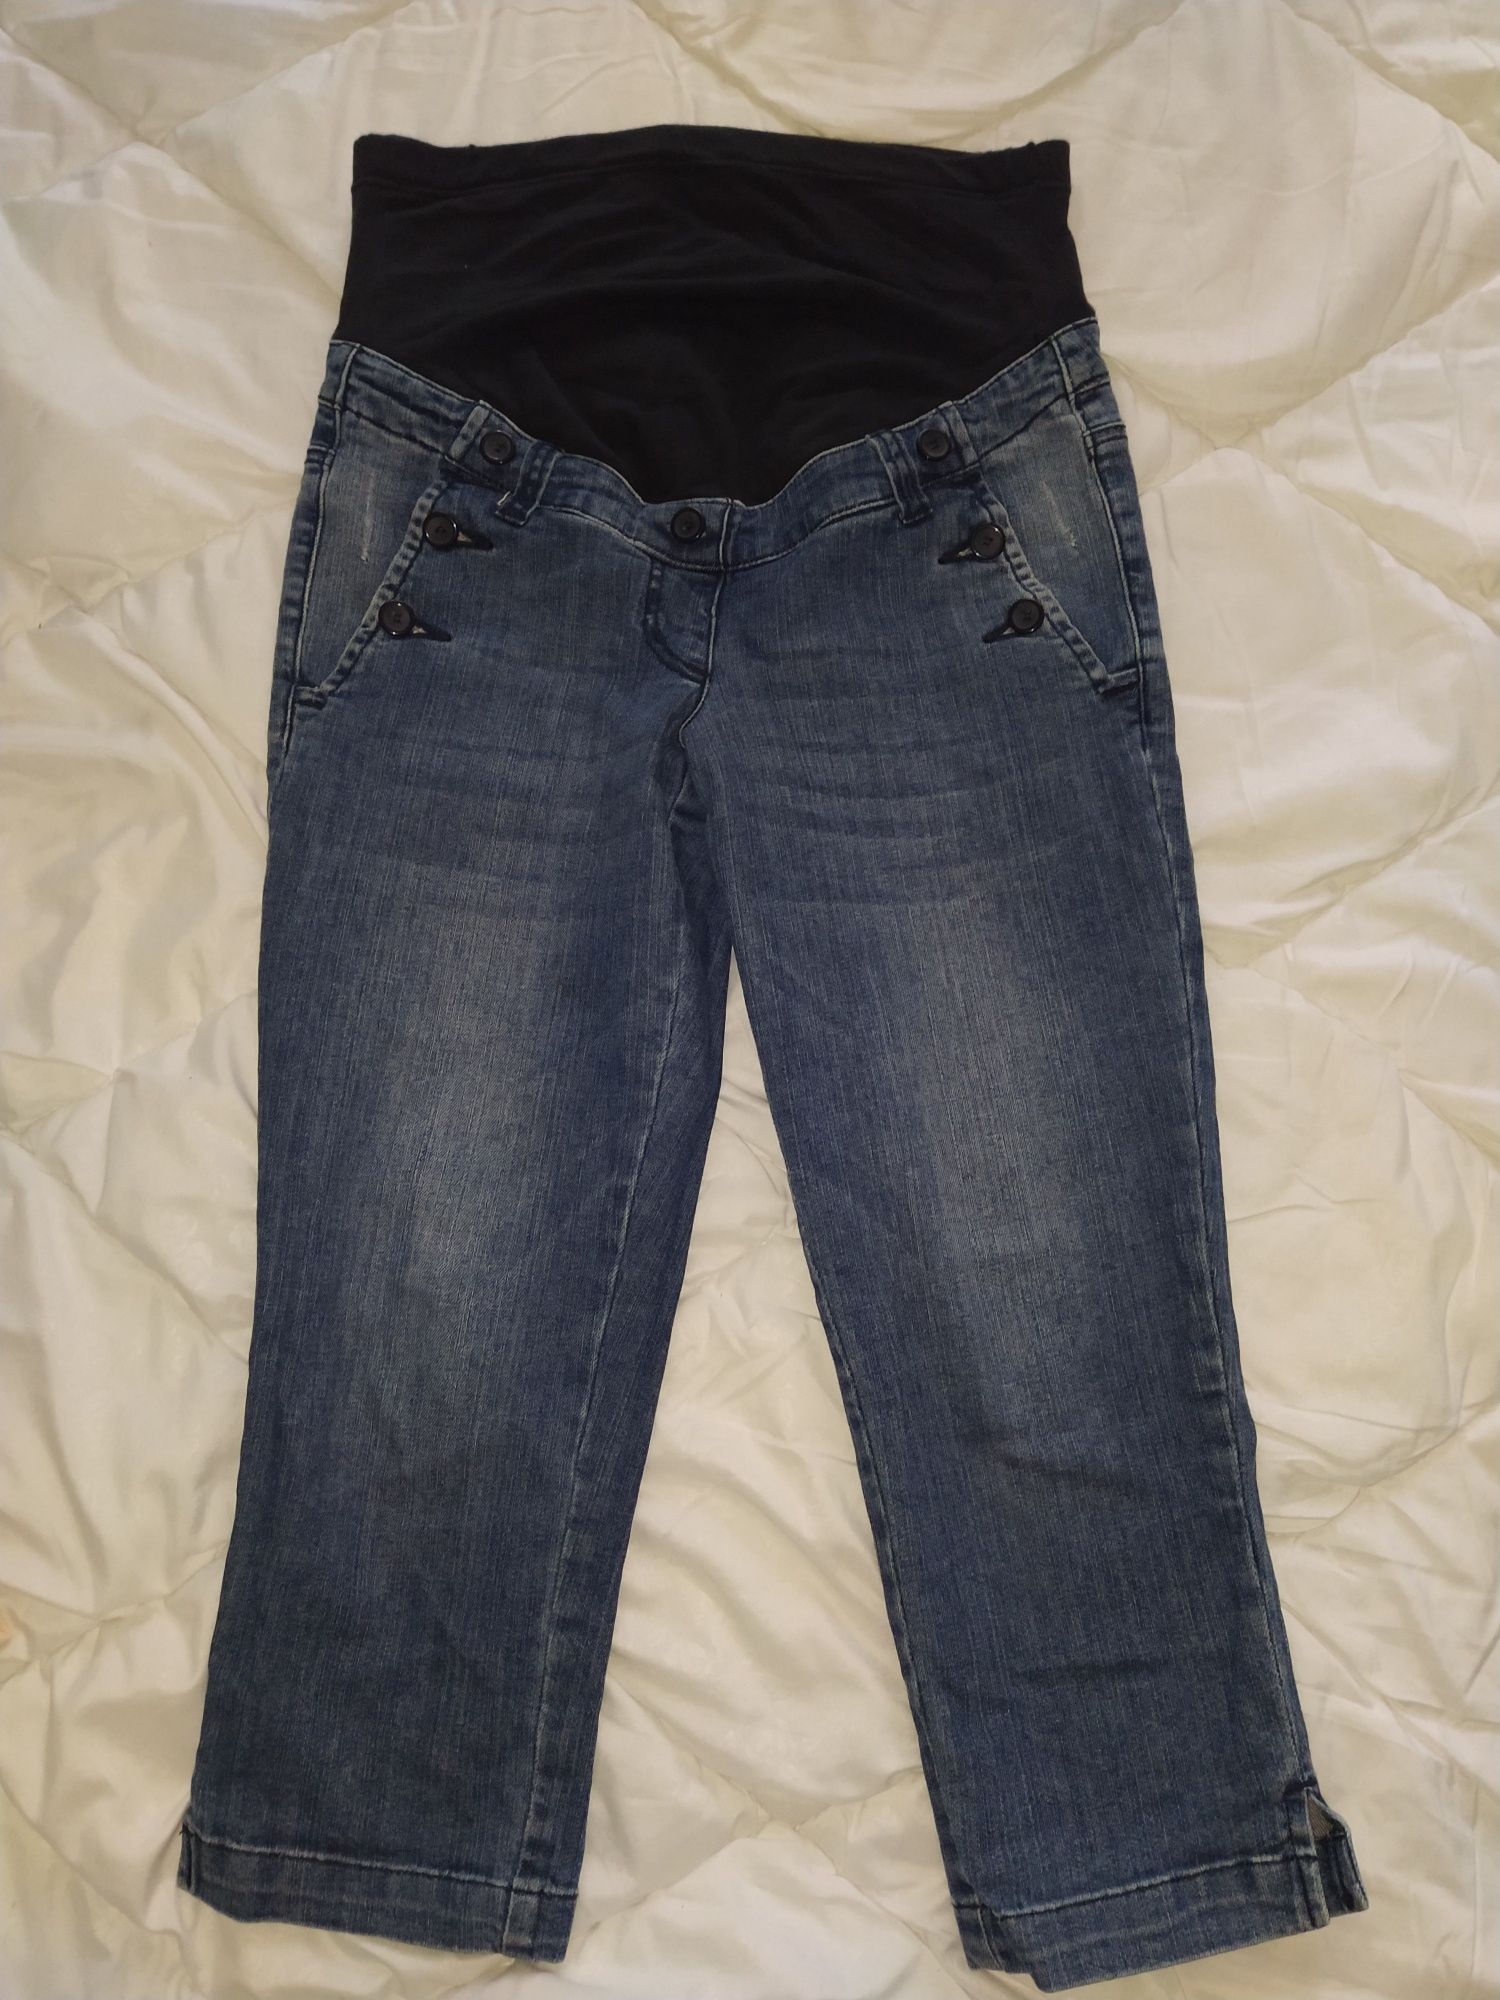 Бриджи джинсовые, штаны, шорты для беременных bonprix